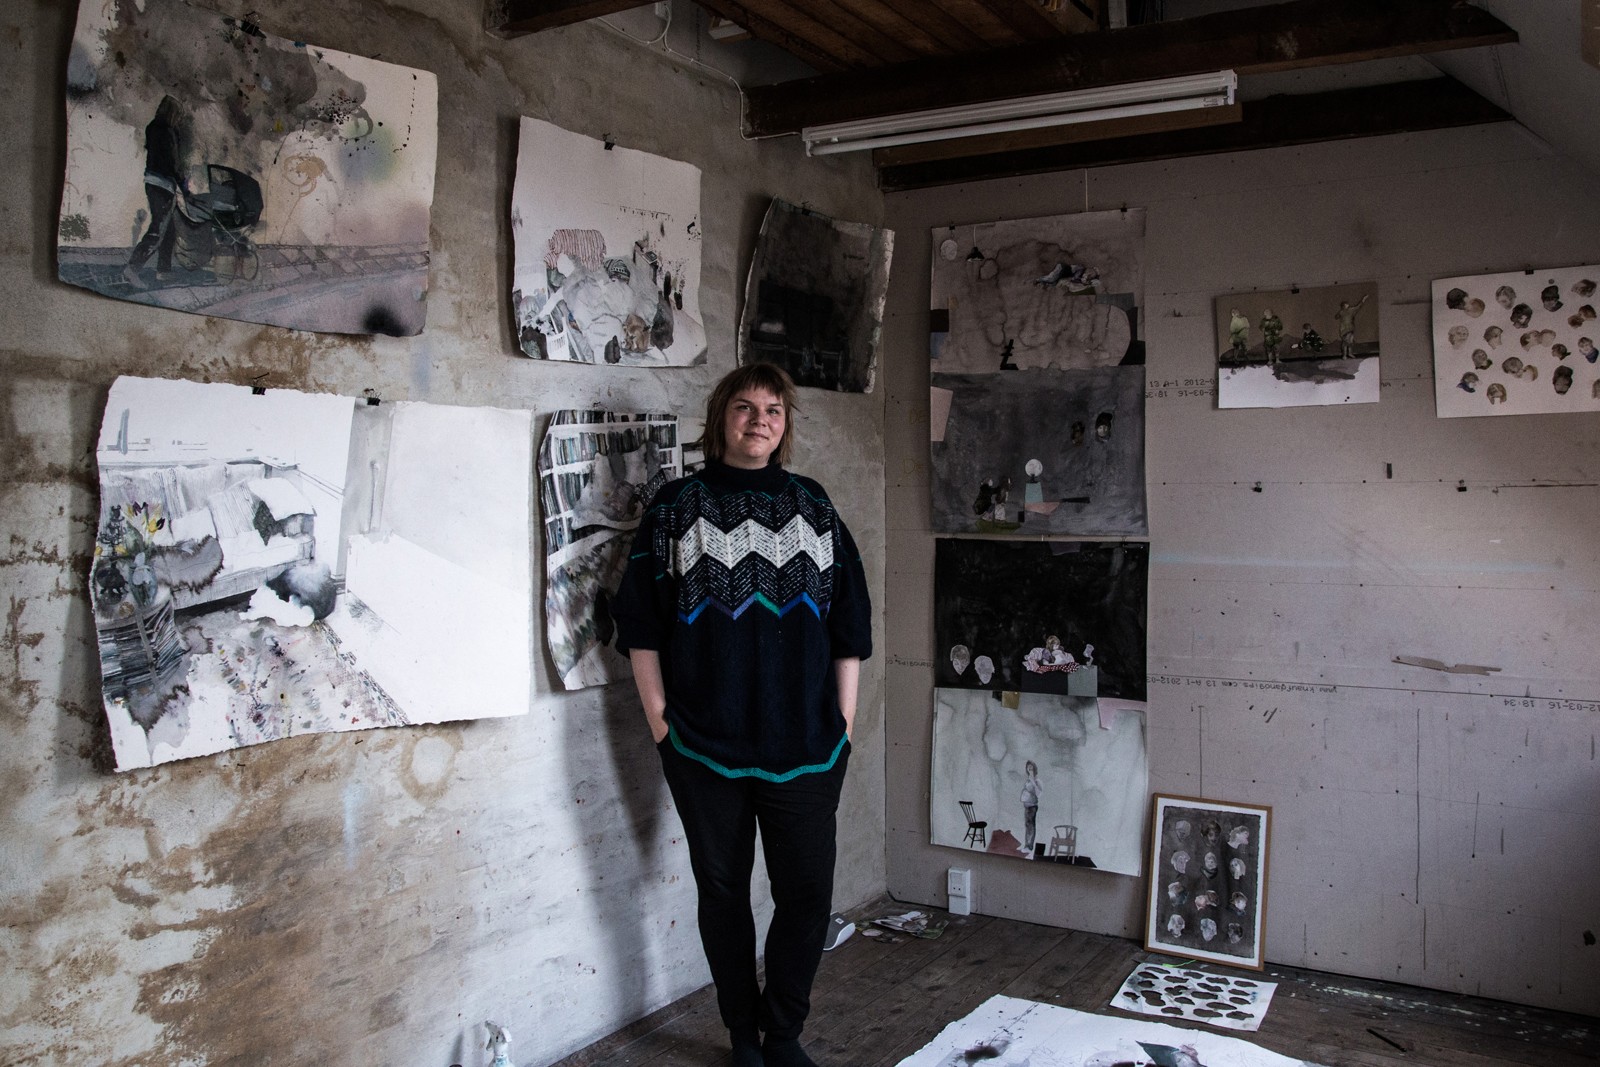 På besøg i billedkunstner Luise Faurholts værksted</br>Vi har været på besøg hos billedkunstner Luise Faurholt i hendes værksted i Aarhus.</br>Foto: Mariana Gil